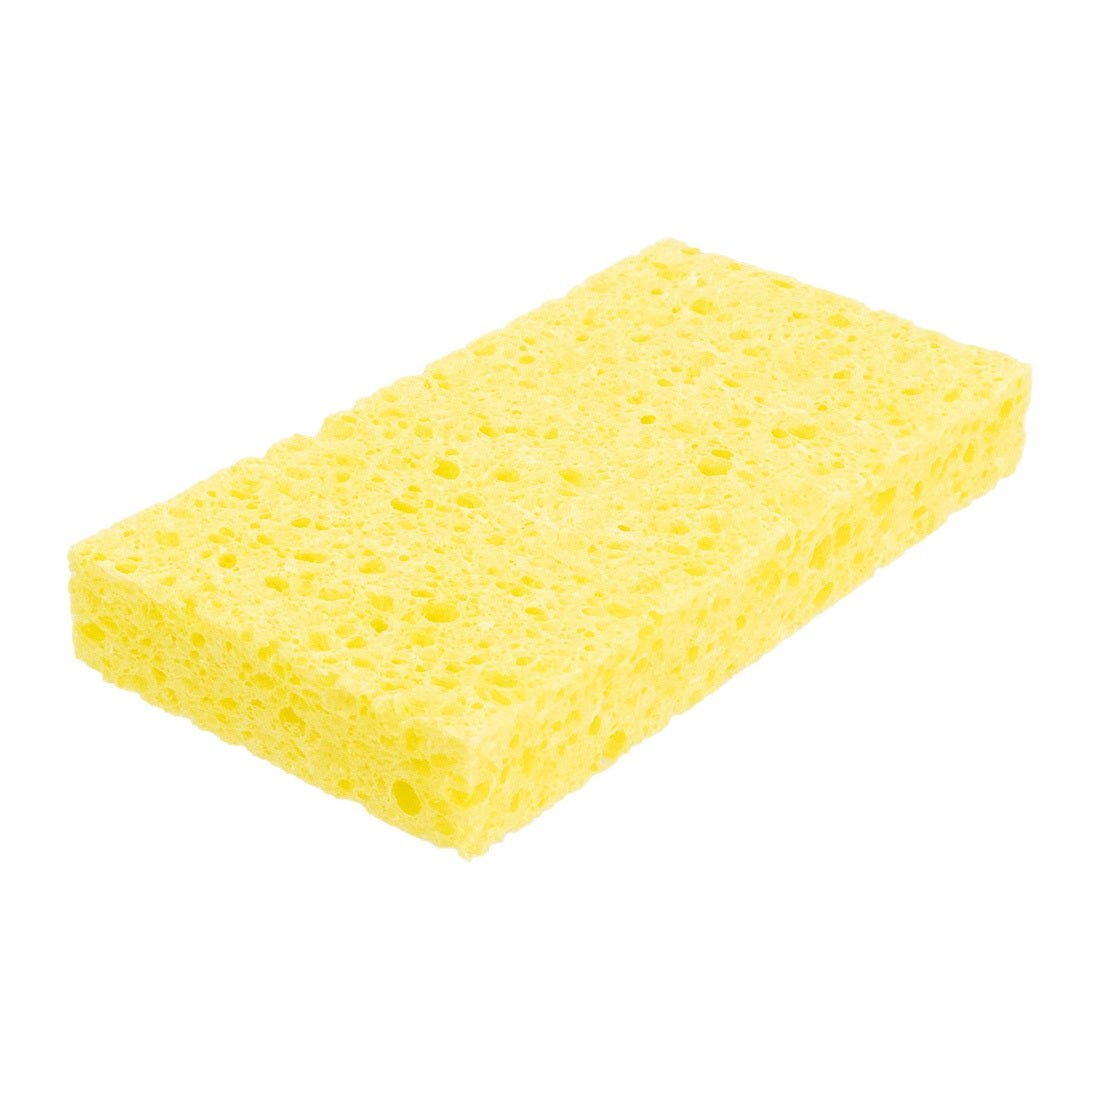 http://windowcleaner.com/cdn/shop/files/World-Enterprises-Cellulose-Sponge-3.jpg?v=1691169642